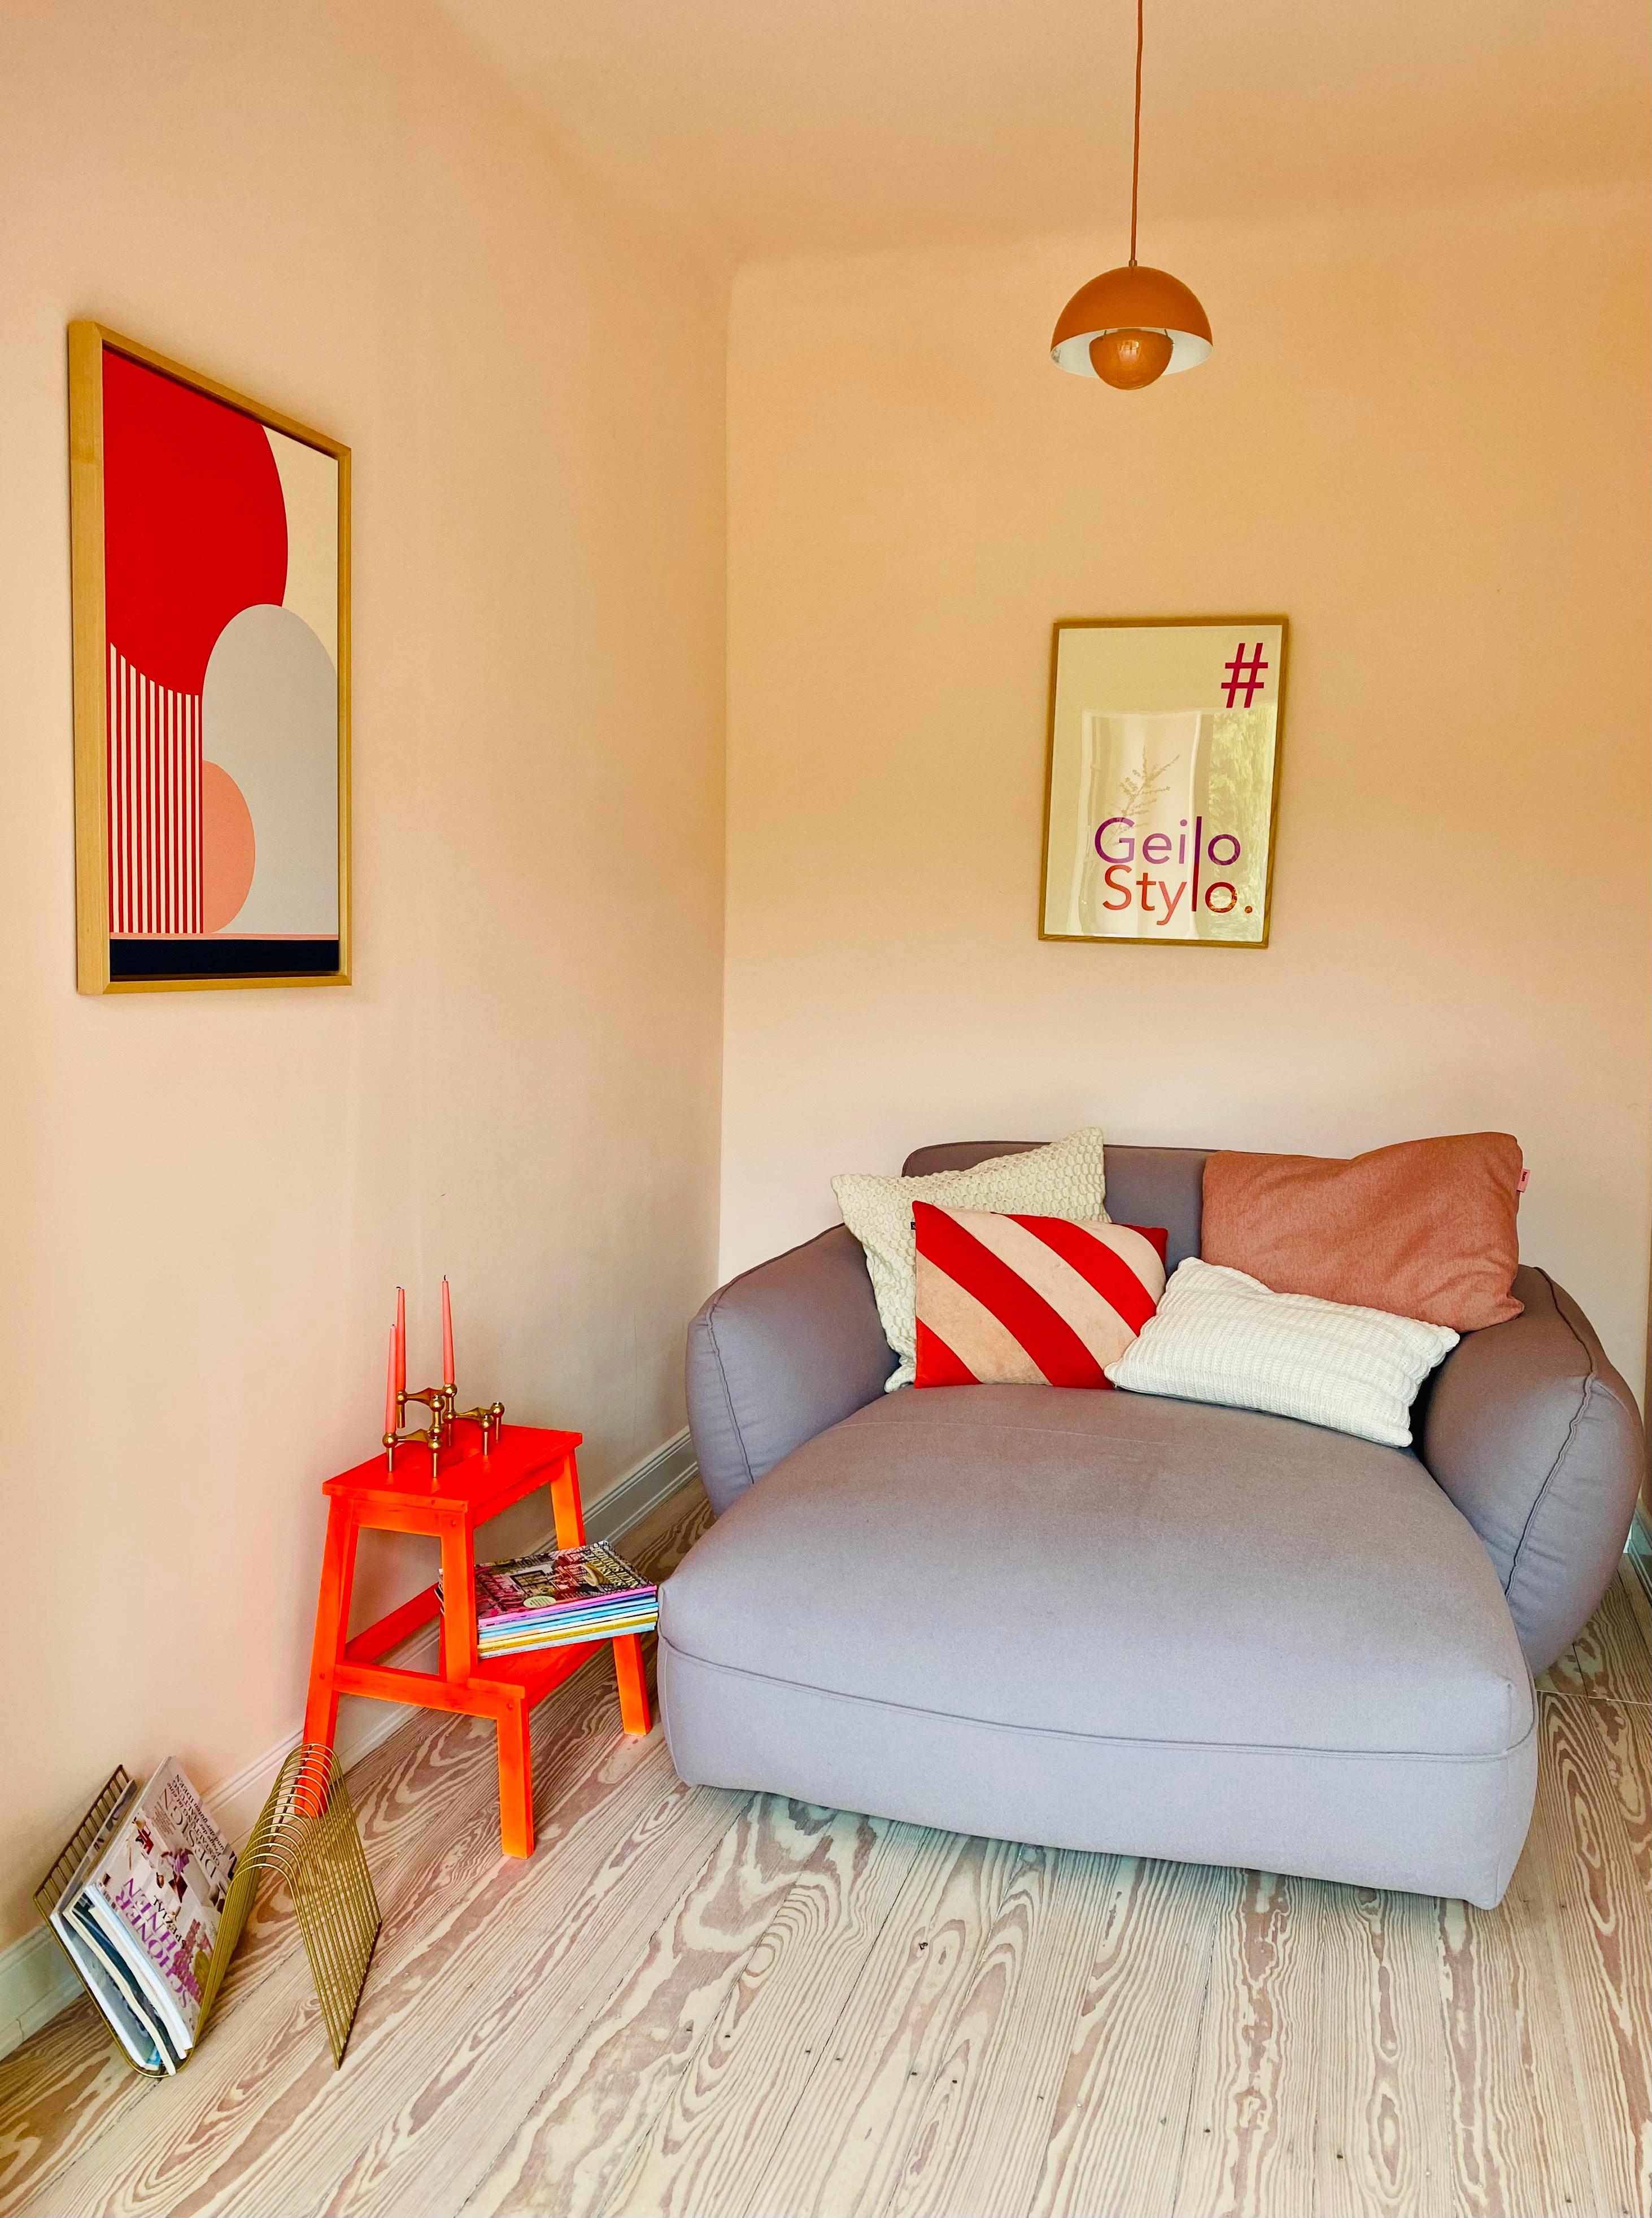 Der Raum mit am meisten Farbe: hier wird gelesen und viel gekuschelt 💜❤️

#leseecke #slowsunday #interiorwithcolour
